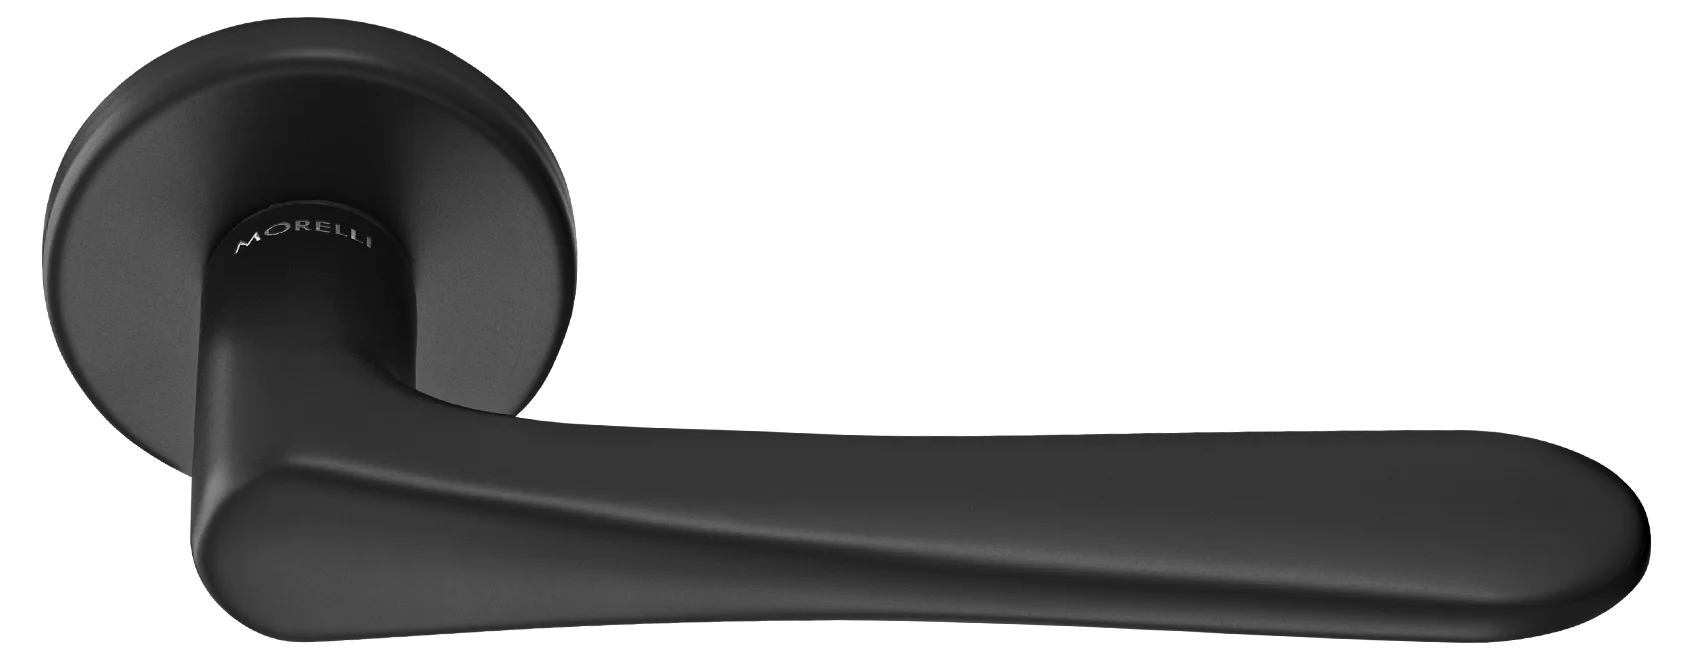 AULA R5 NERO, ручка дверная на розетке 7мм, цвет -  черный фото купить Липецк